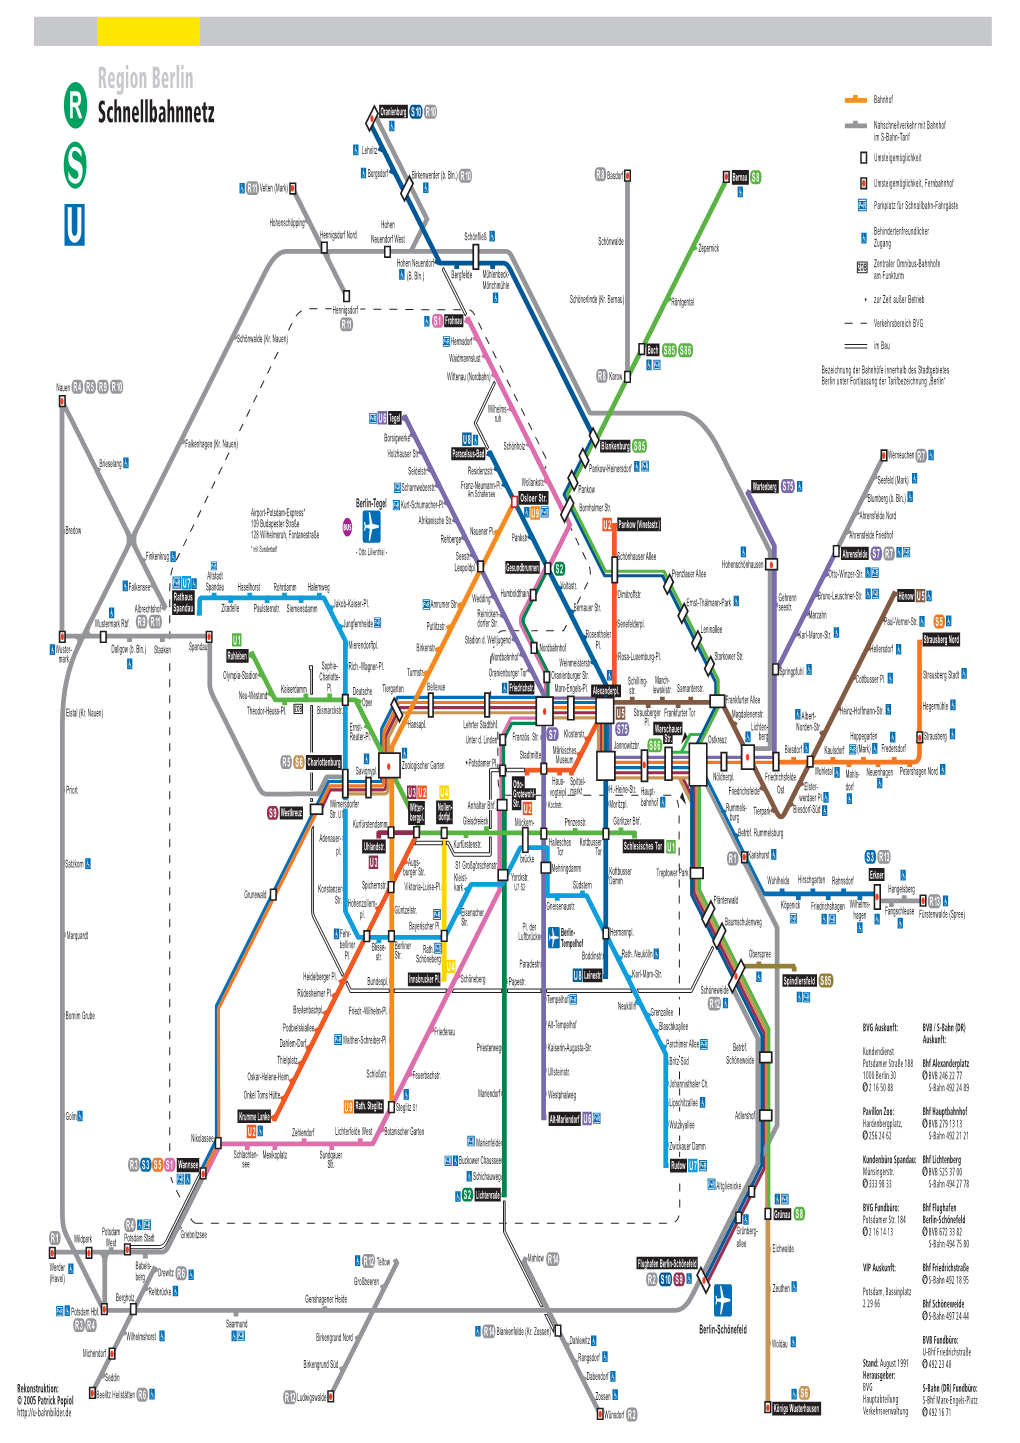 Region Berlin Schnellbahnnetz